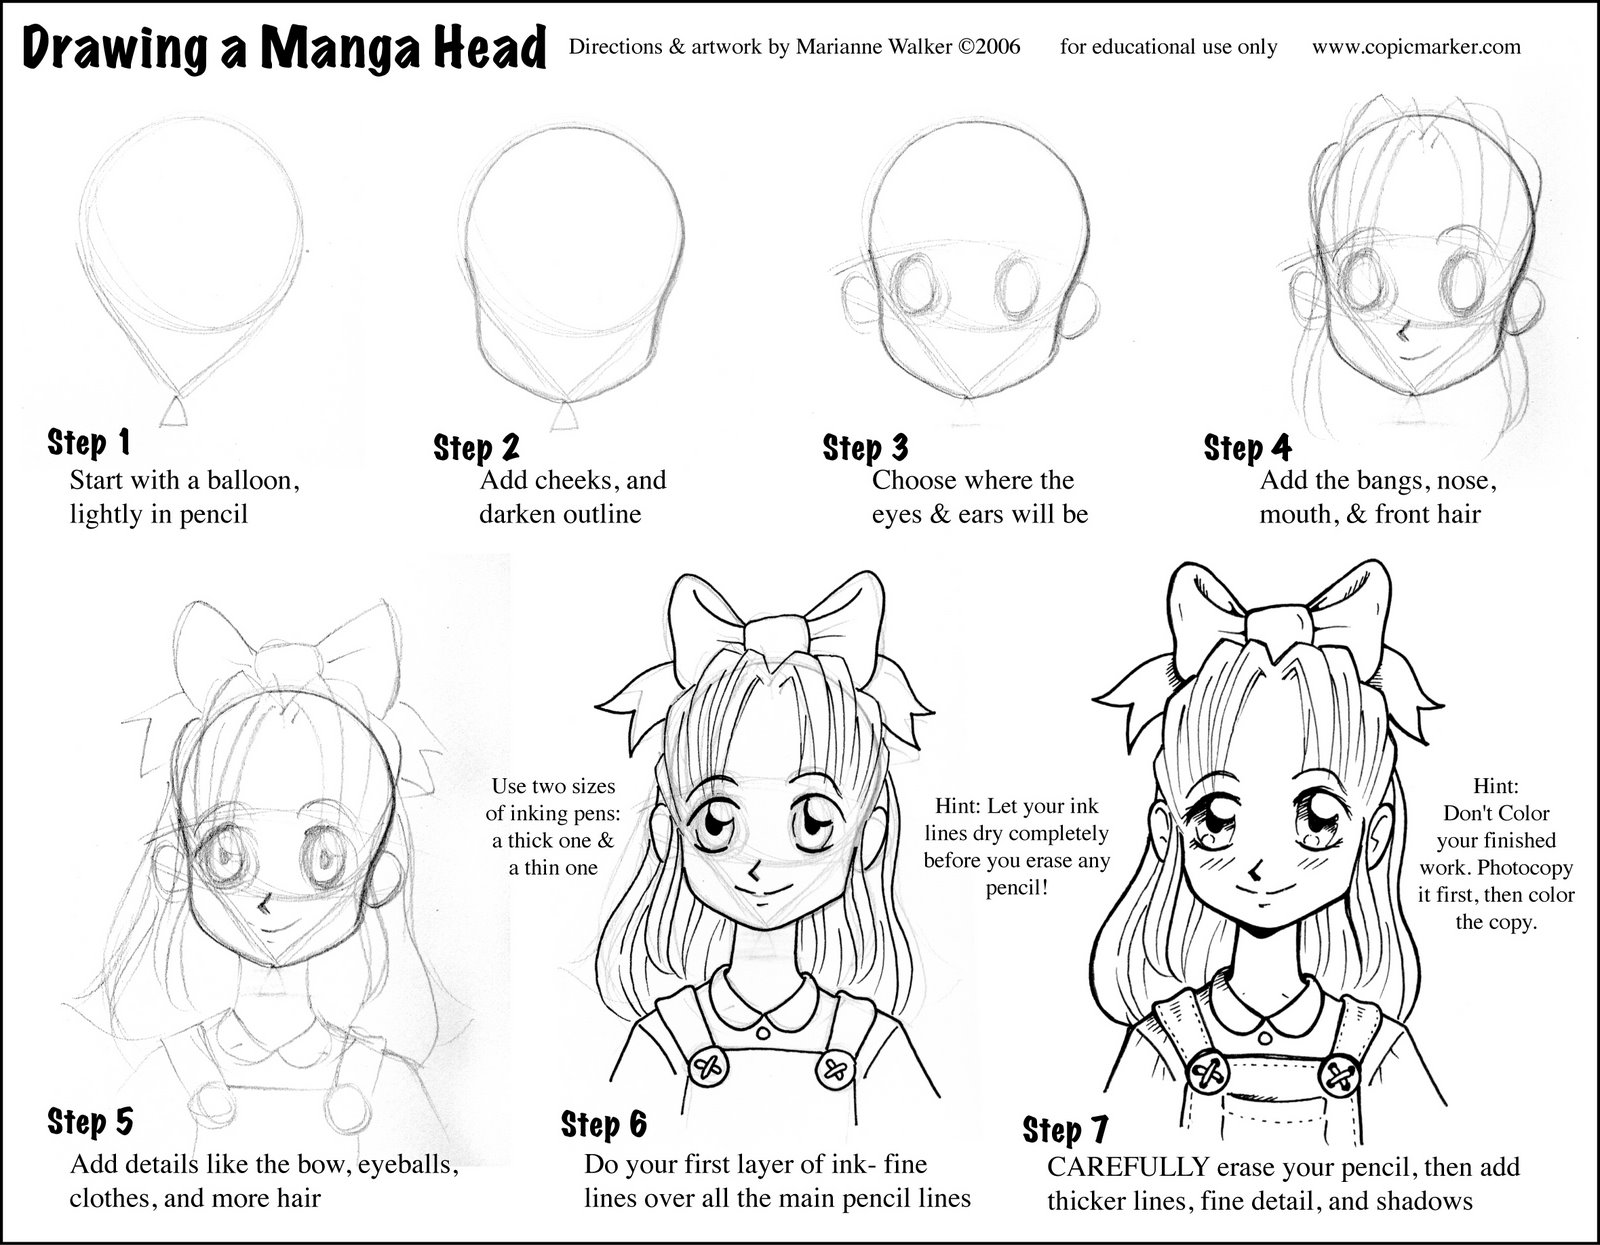 [Manga+head+tutorial.jpg]